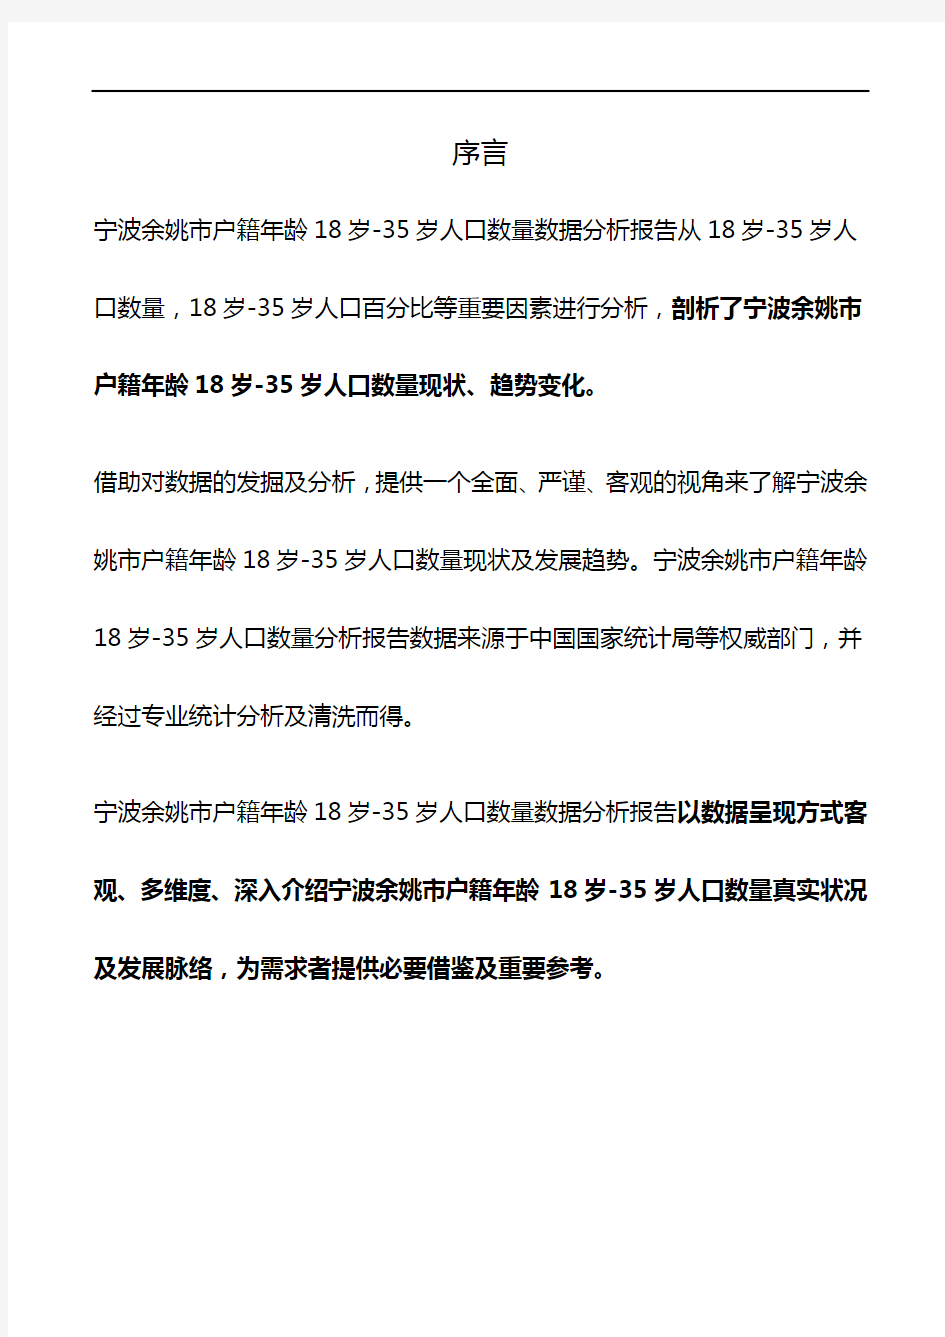 浙江省宁波余姚市户籍年龄18岁-35岁人口数量数据分析报告2019版